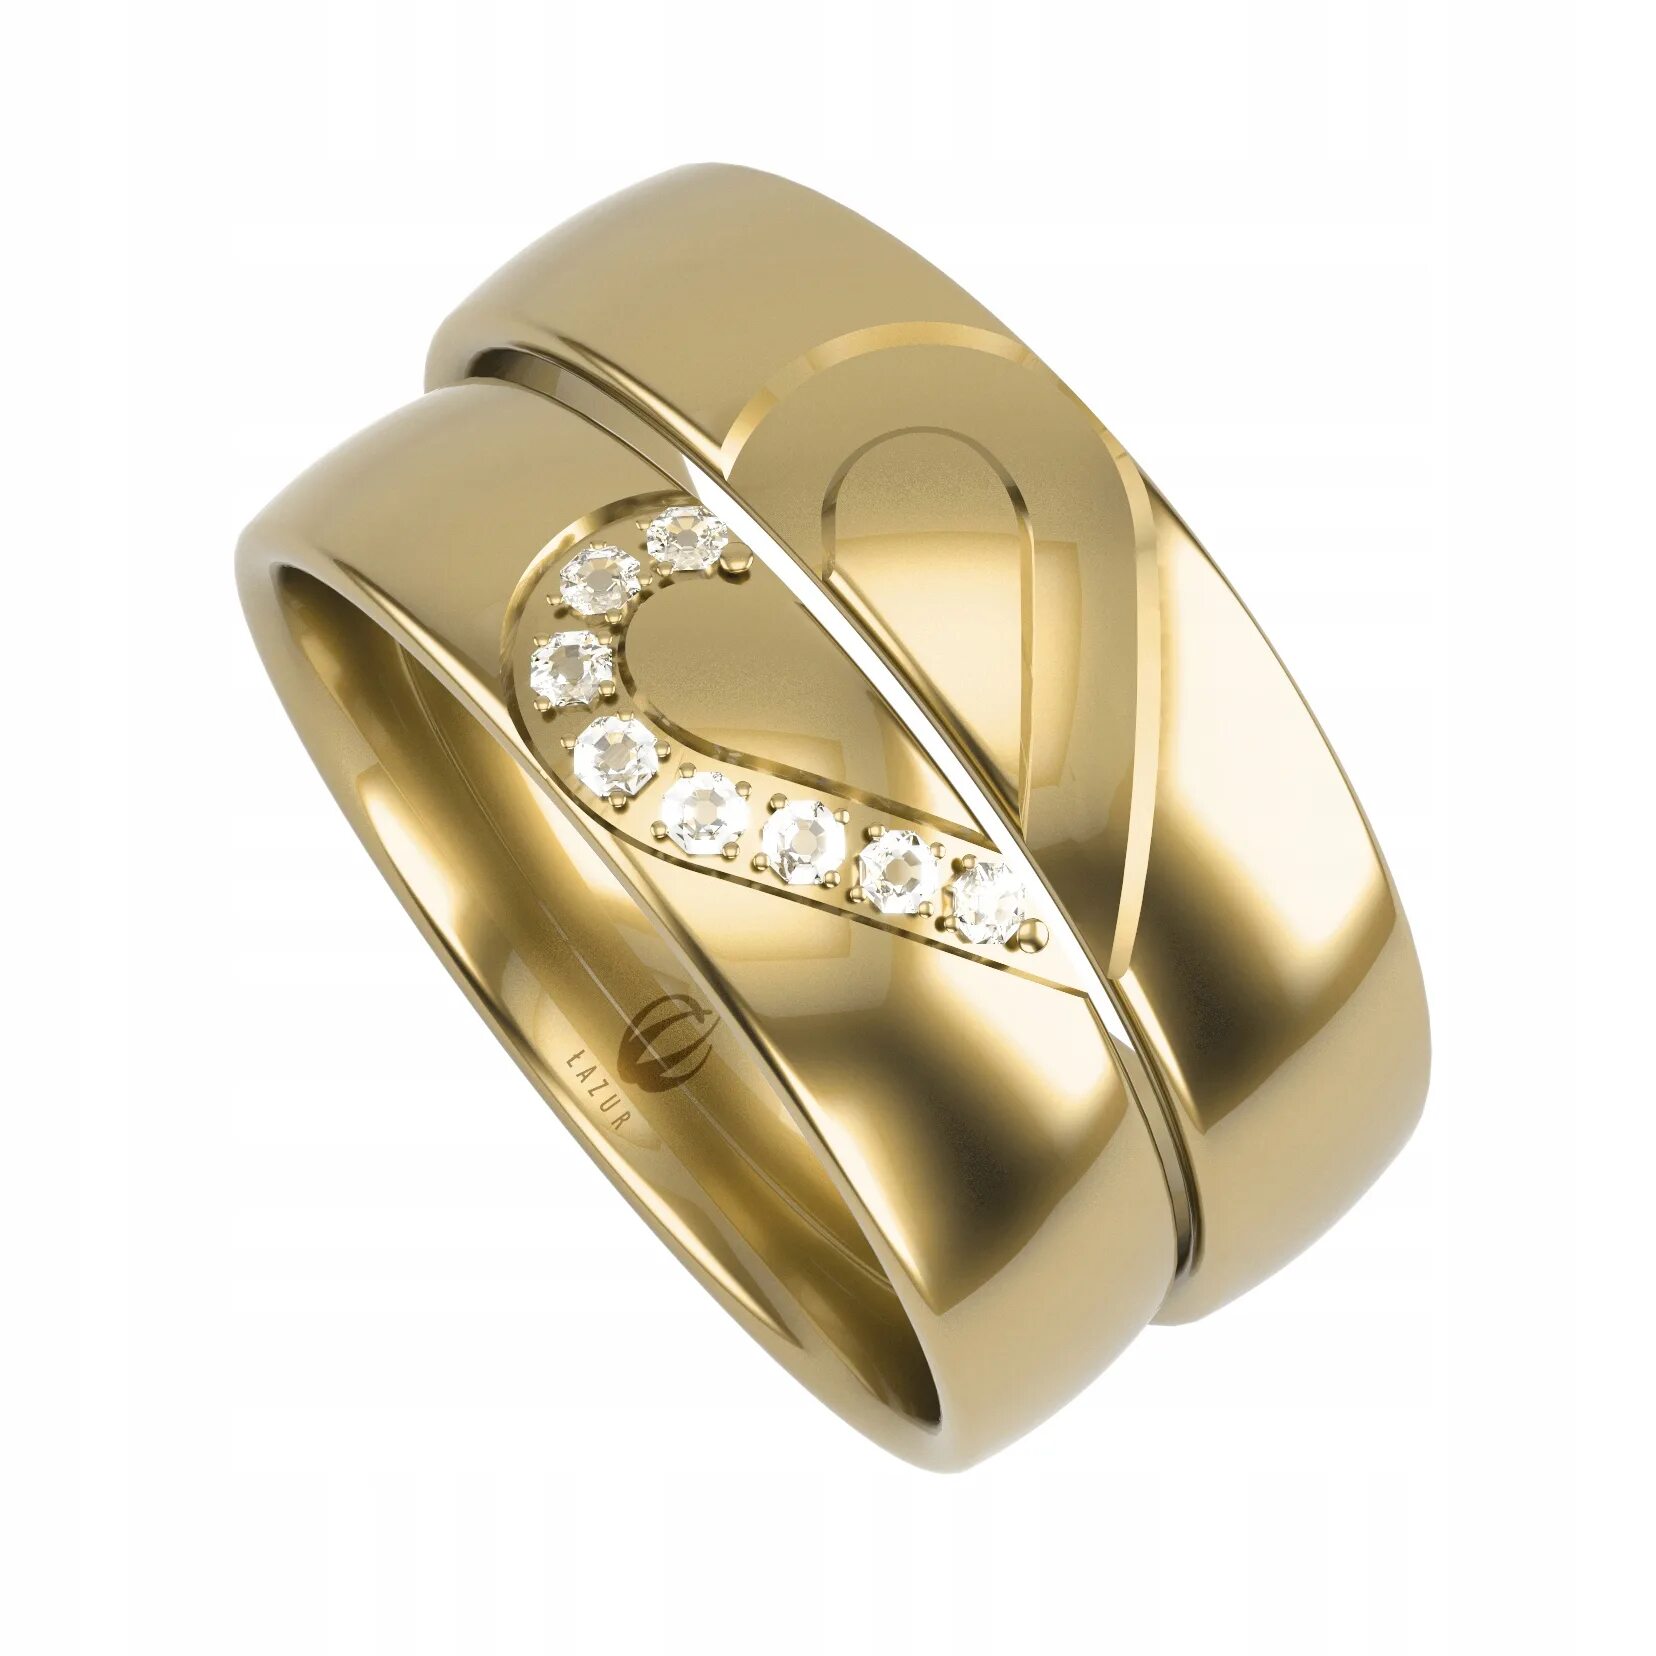 Купить недорого обручальные кольца золото. Обручальные кольца парные золотые 585. Парные обручальные кольца из золота 585. Золотое кольцо обручалка 585. Золото 585 обручальные кольца парные.